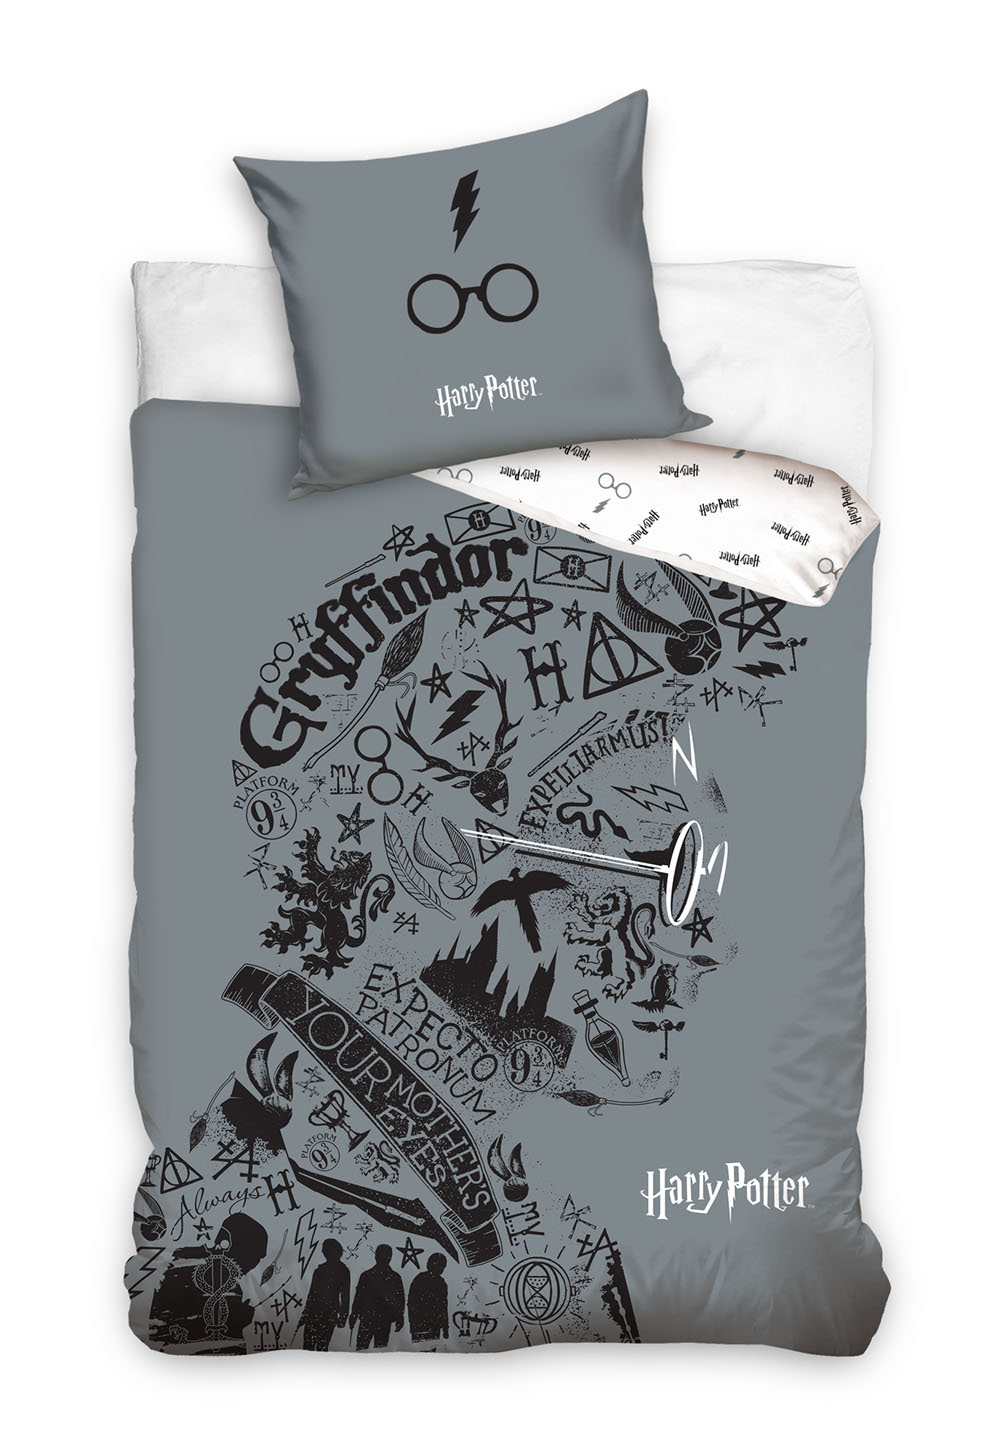 Carbotex Ložní povlečení - Harry Potter (šedé) 140 x 200 cm